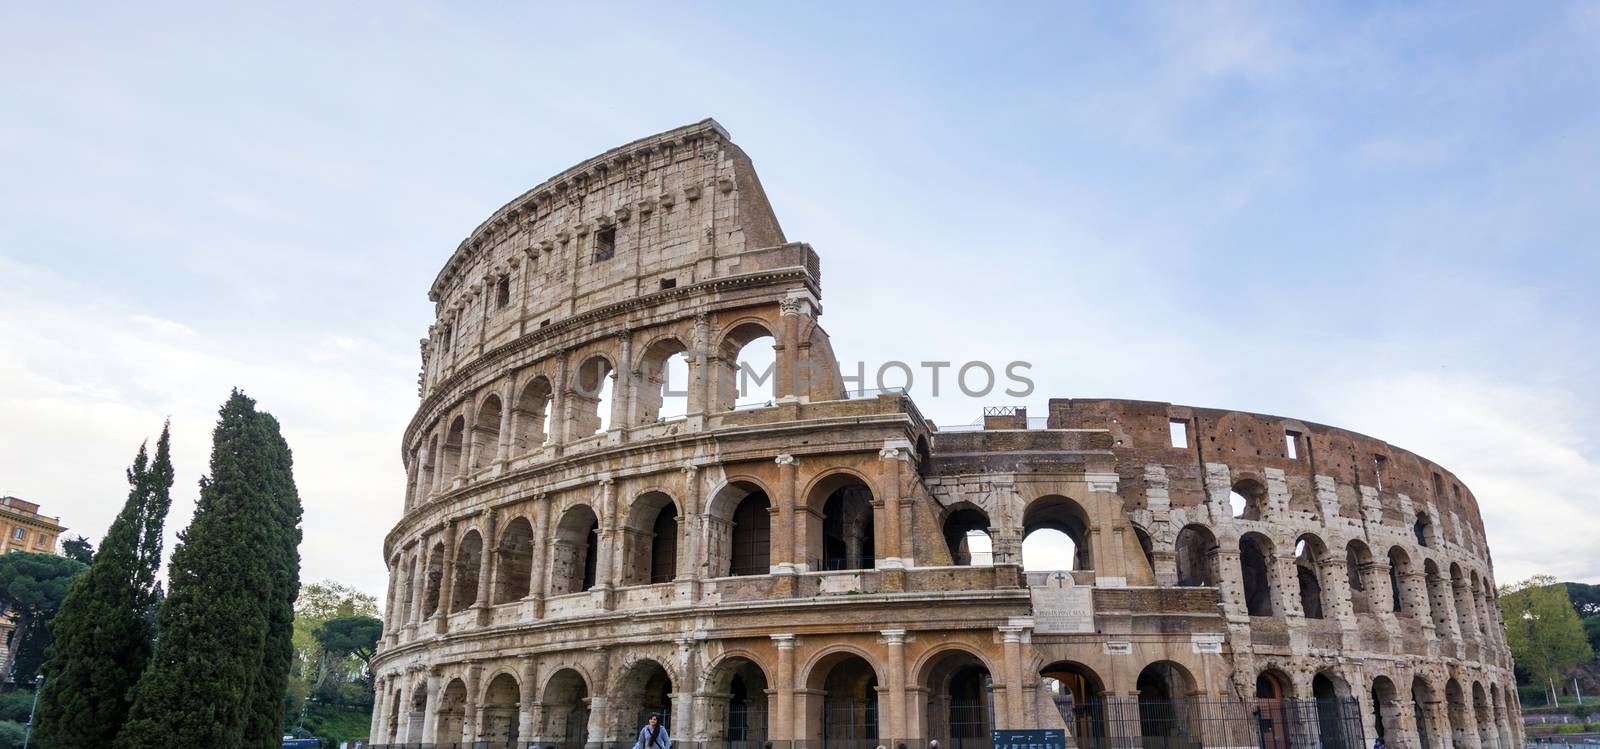 The Great Roman Colosseum Coliseum, Colosseo in Rome by rarrarorro